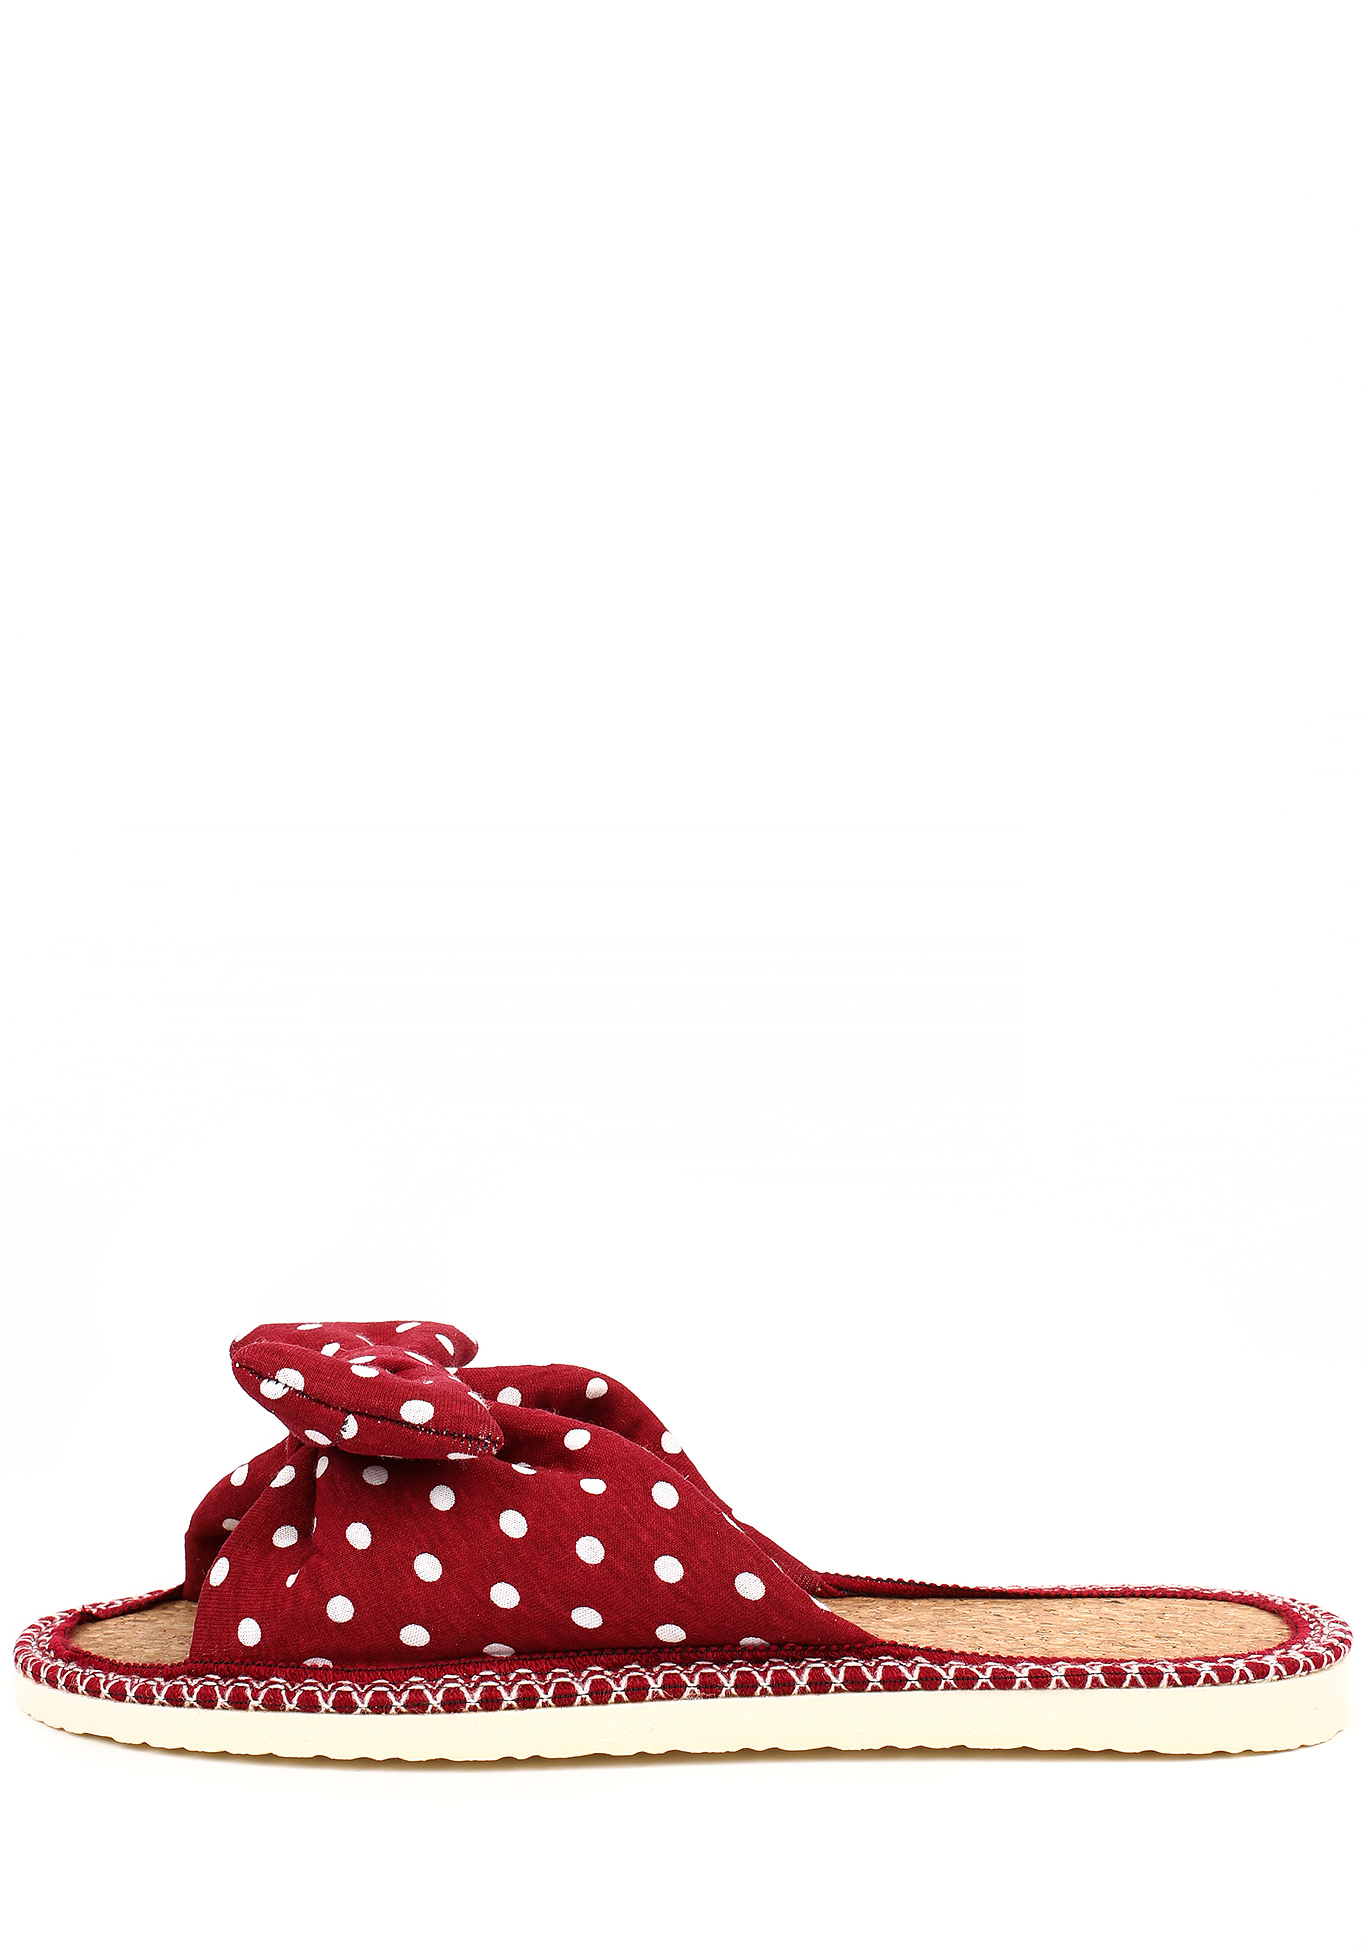 Тапочки женские "Модный горошек", цвет красный, размер 36 - фото 2